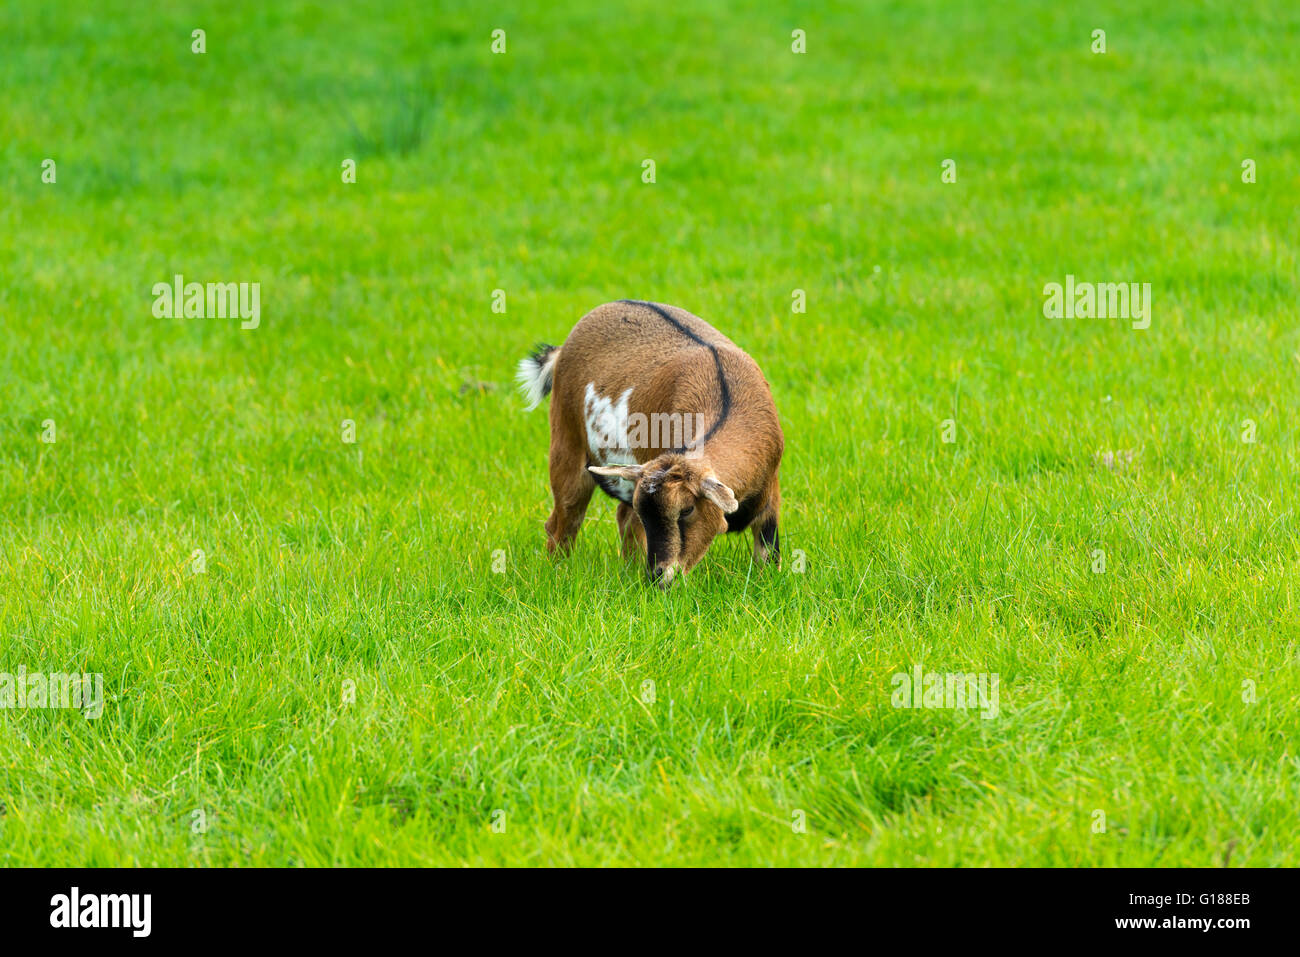 Une chèvre brune de manger de l'herbe verte à la ferme Banque D'Images